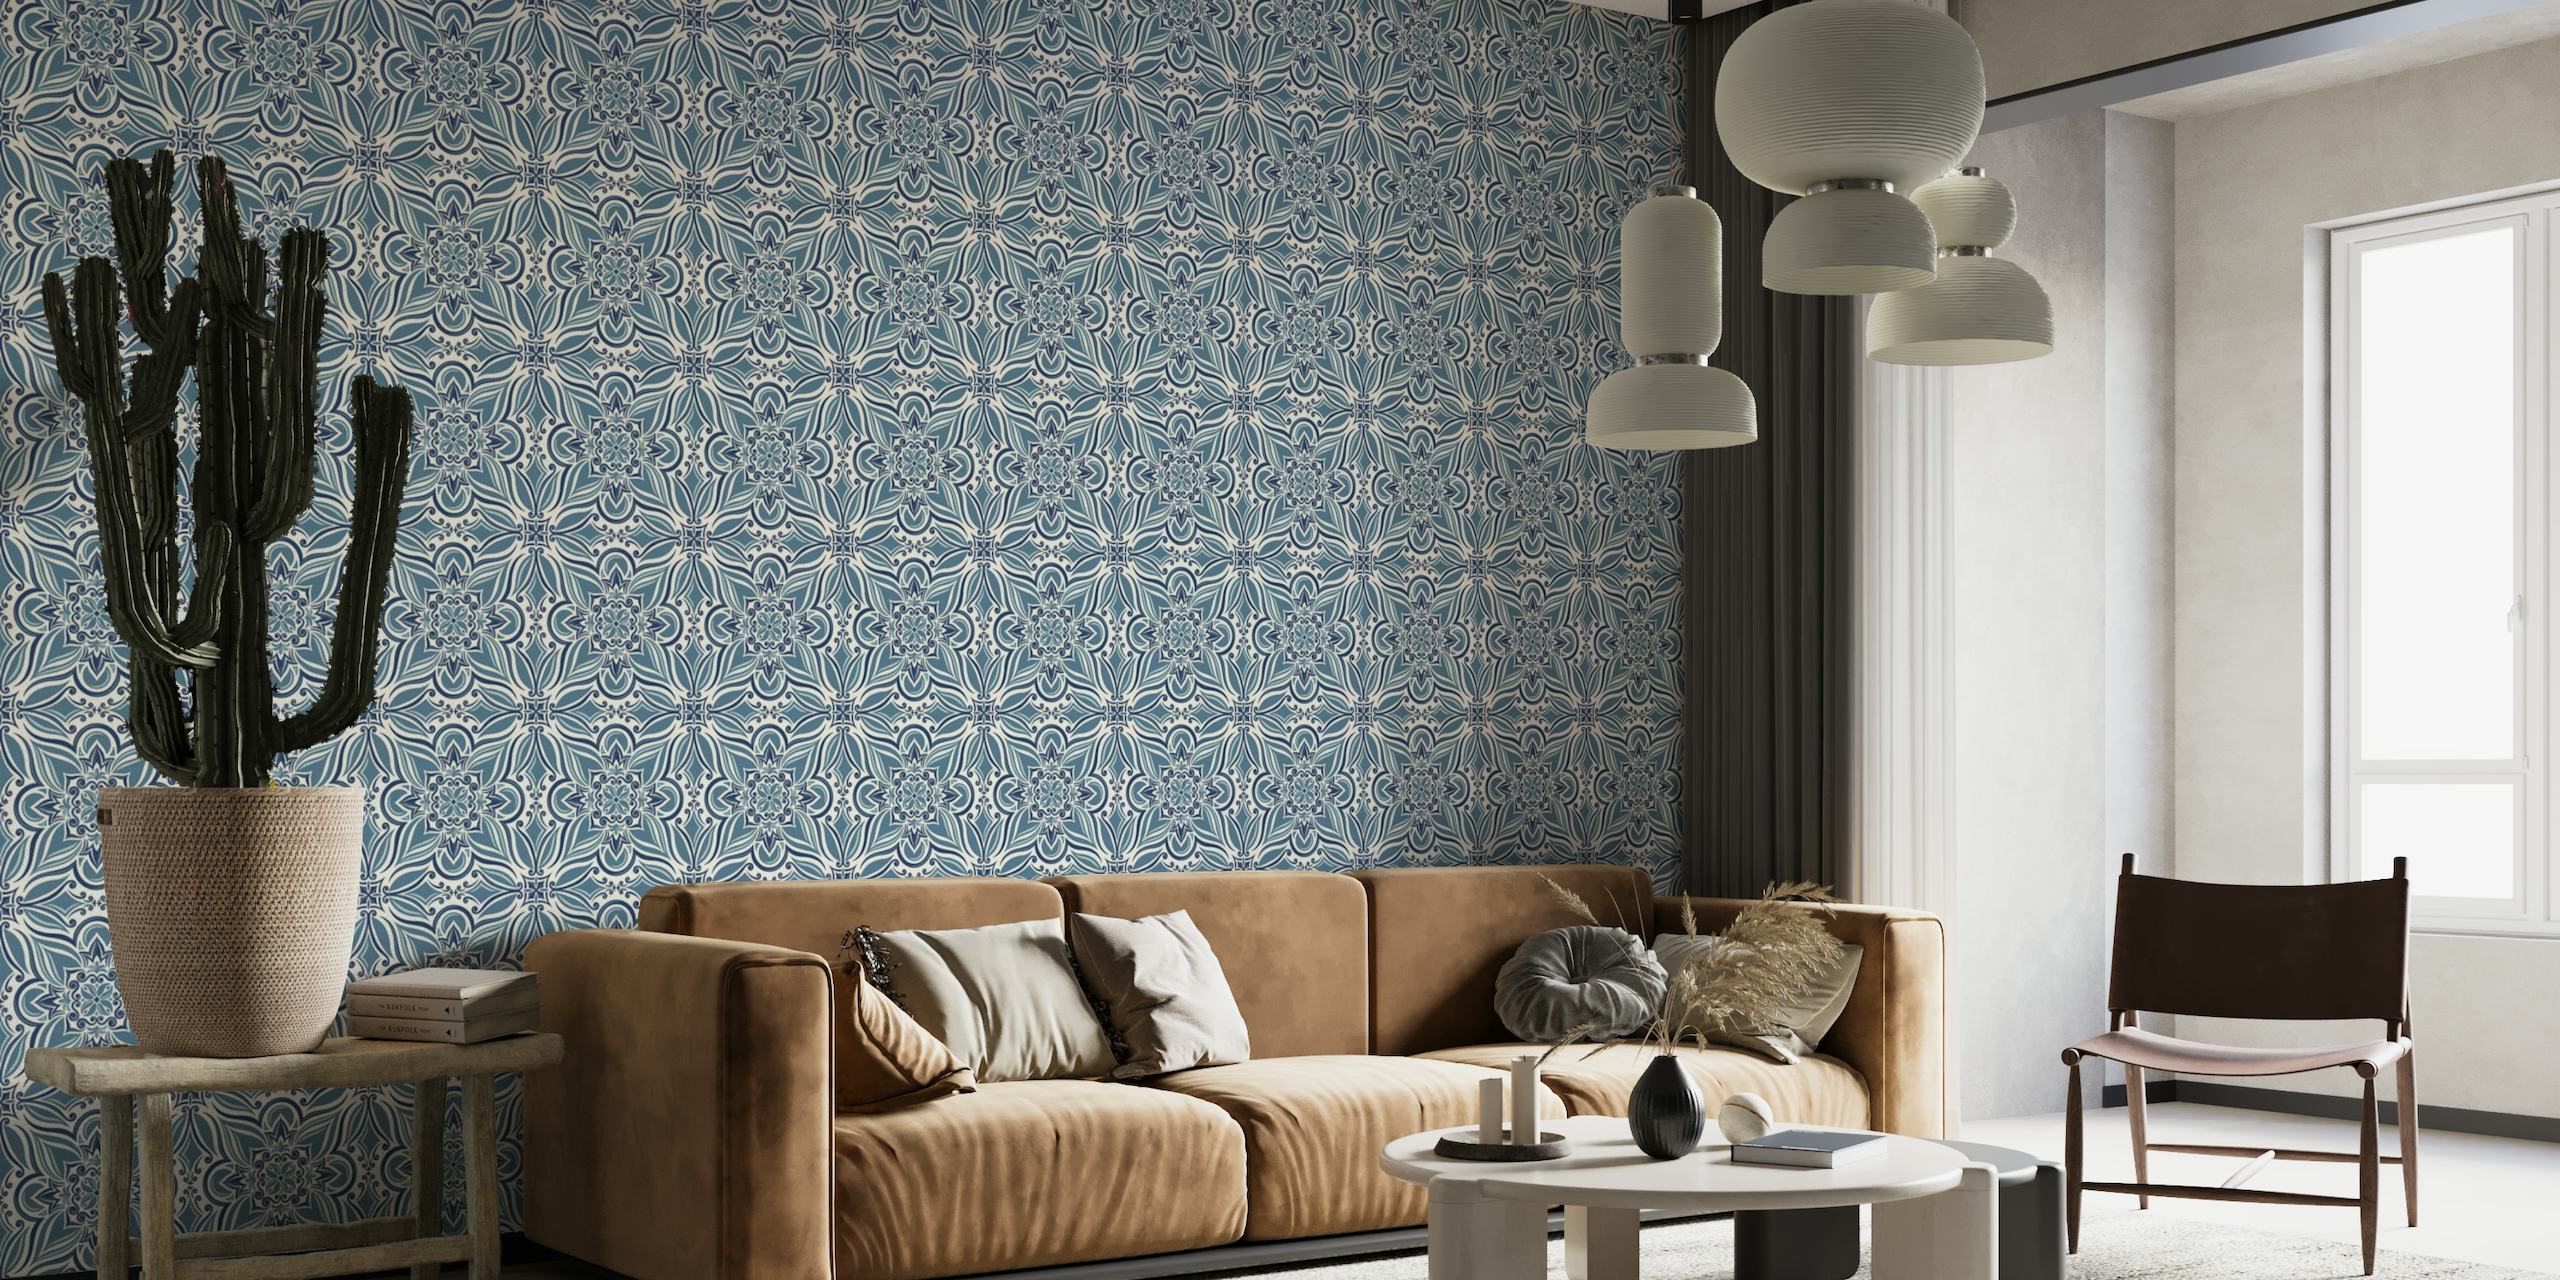 Mural de parede com padrão de azulejos azuis e brancos do Mediterrâneo costeiro para decoração de casa